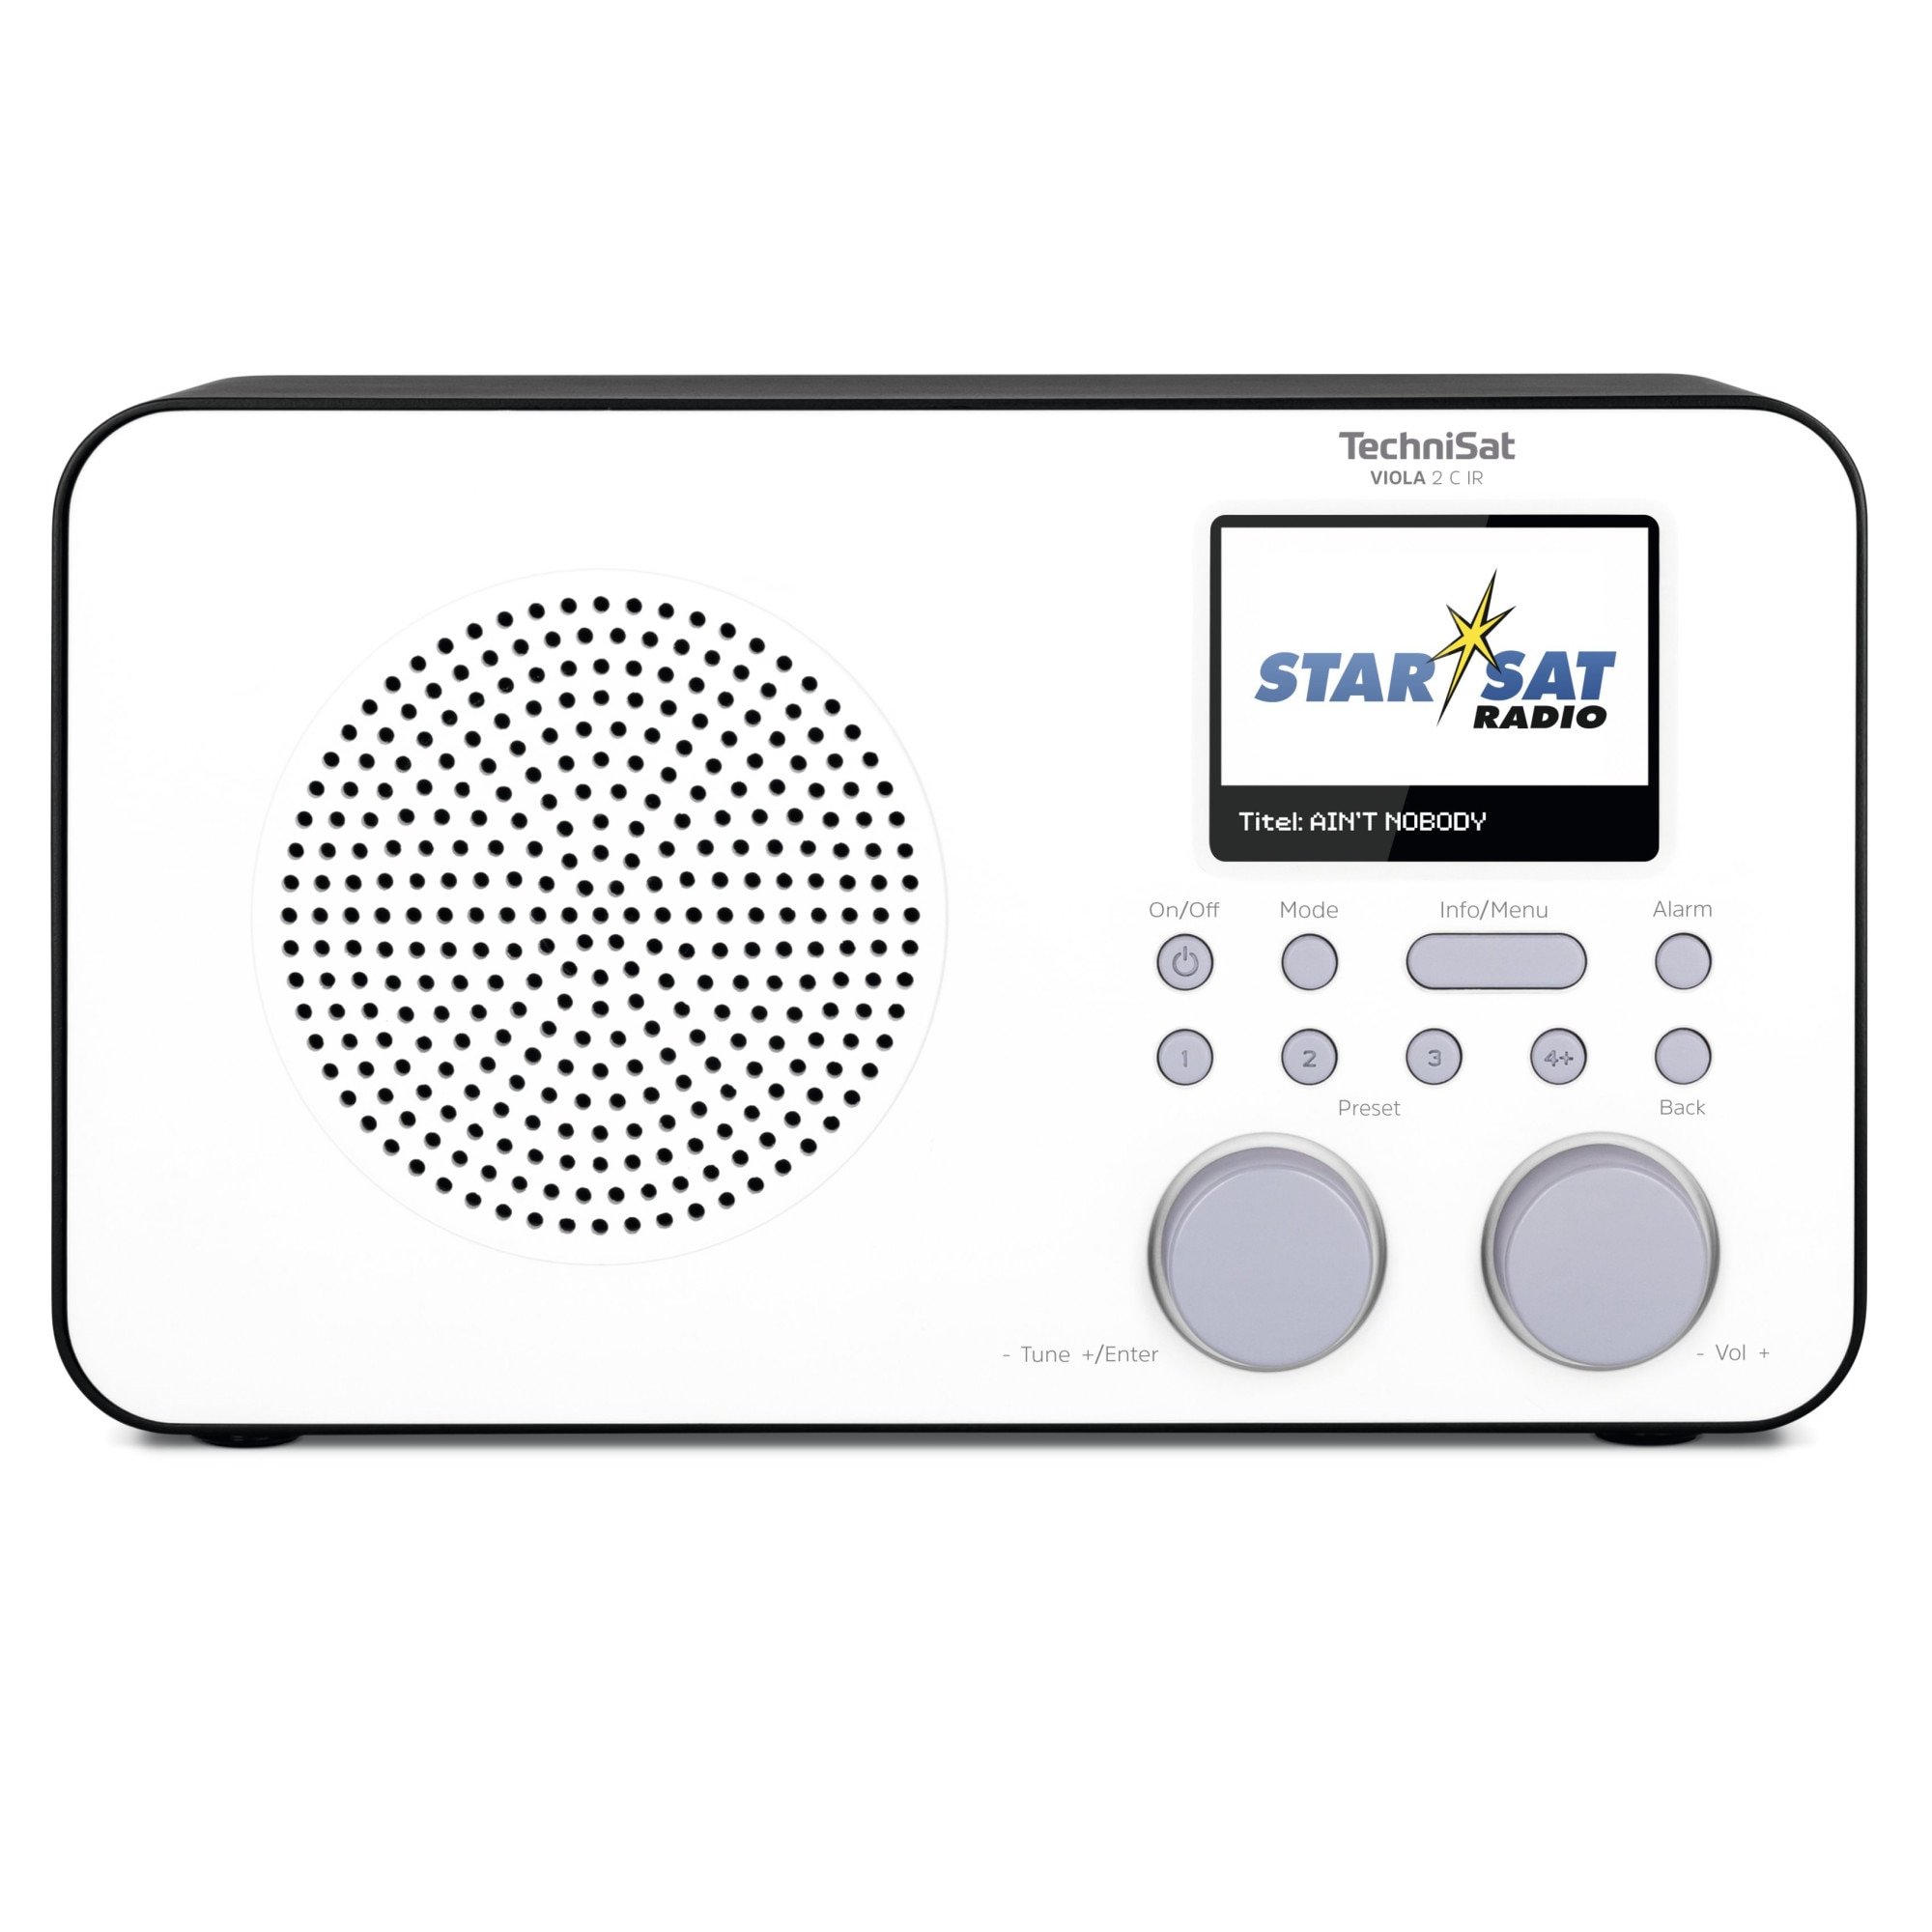 TechniSat Hordozható rádió, PURPLE 2 C IR, DAB+, FM rádió és internetes  rádió, 2,4 hüvelykes kijelző, 3 W, fekete-fehér